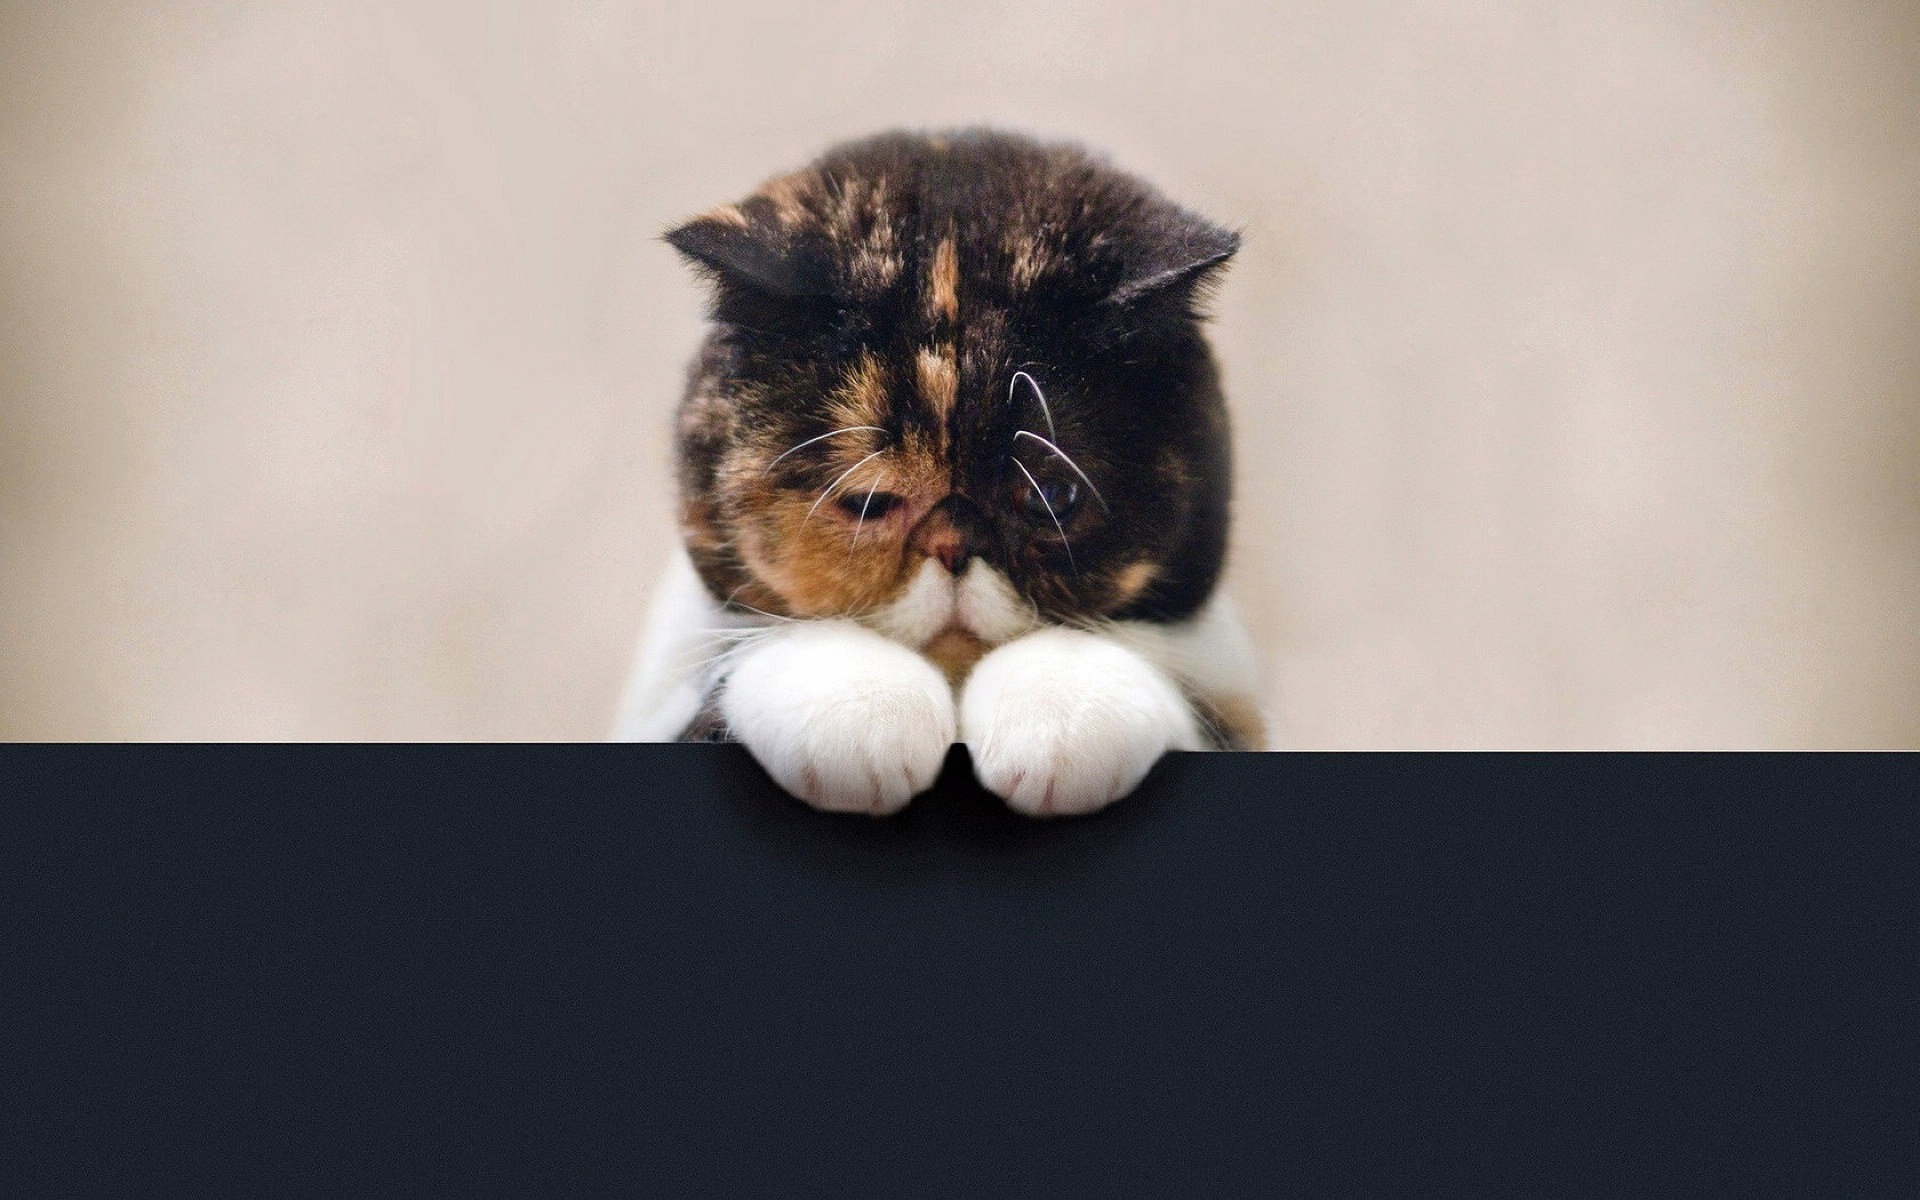 动物 猫 小猫 搞笑 打呵欠 4K壁纸壁纸(动物静态壁纸) - 静态壁纸下载 - 元气壁纸